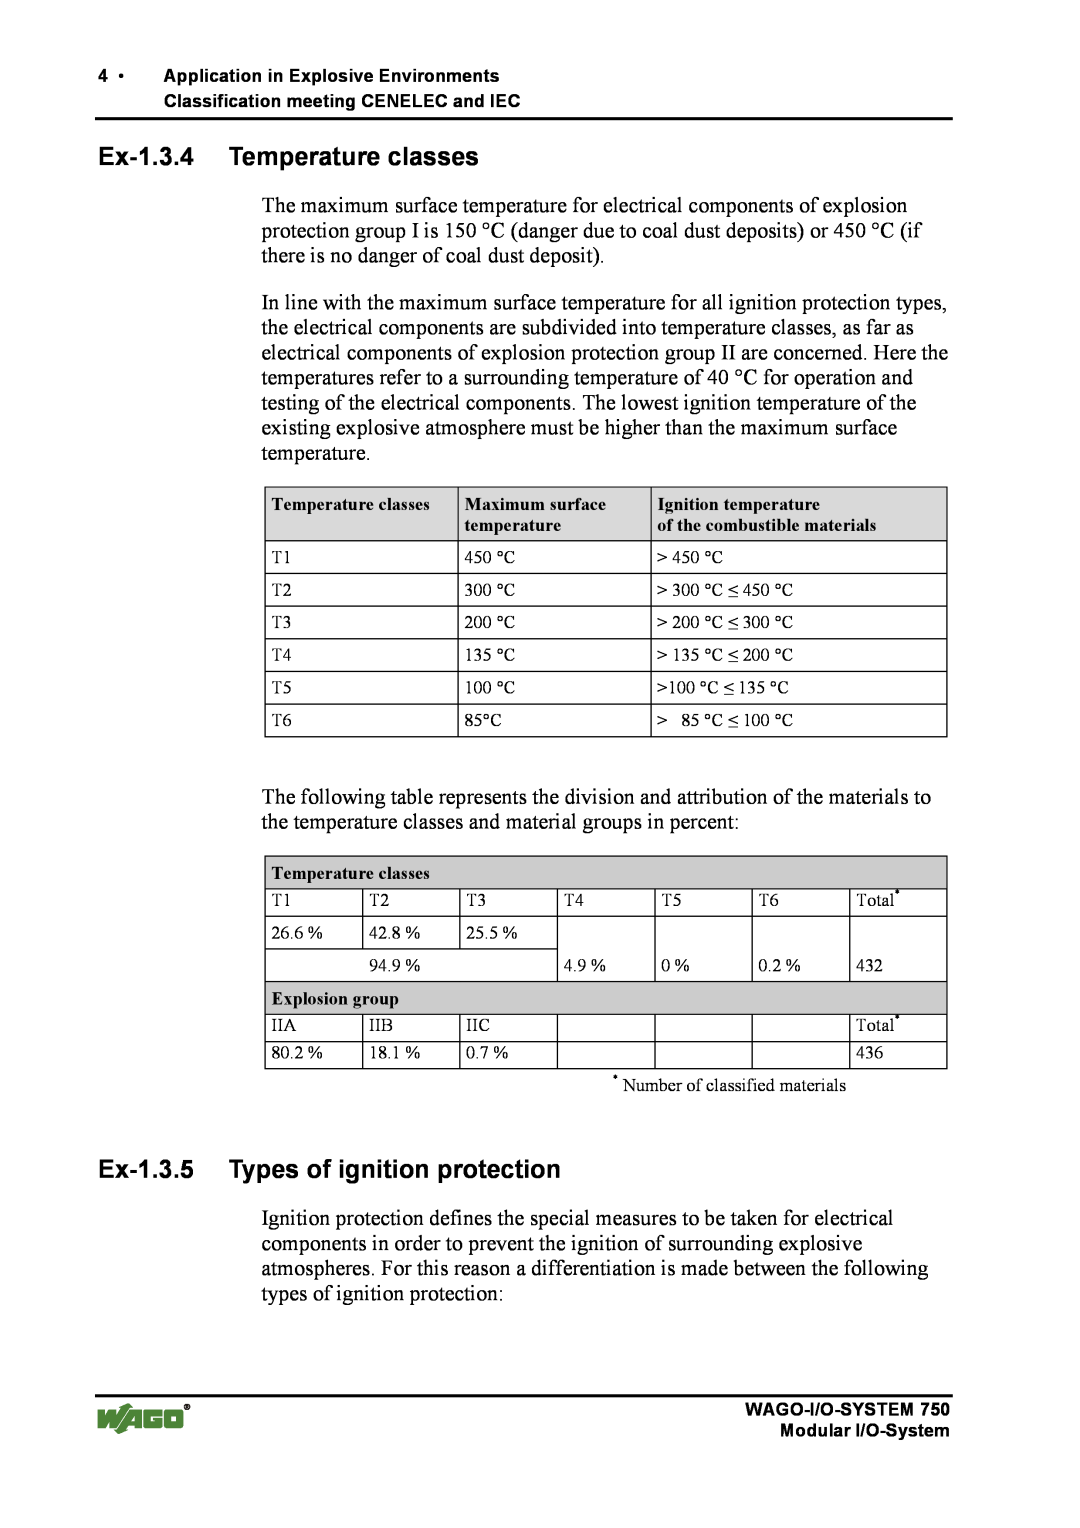 Quatech INTERBUS S manual Ex-1.3.4 Temperature classes, Ex-1.3.5 Types of ignition protection 